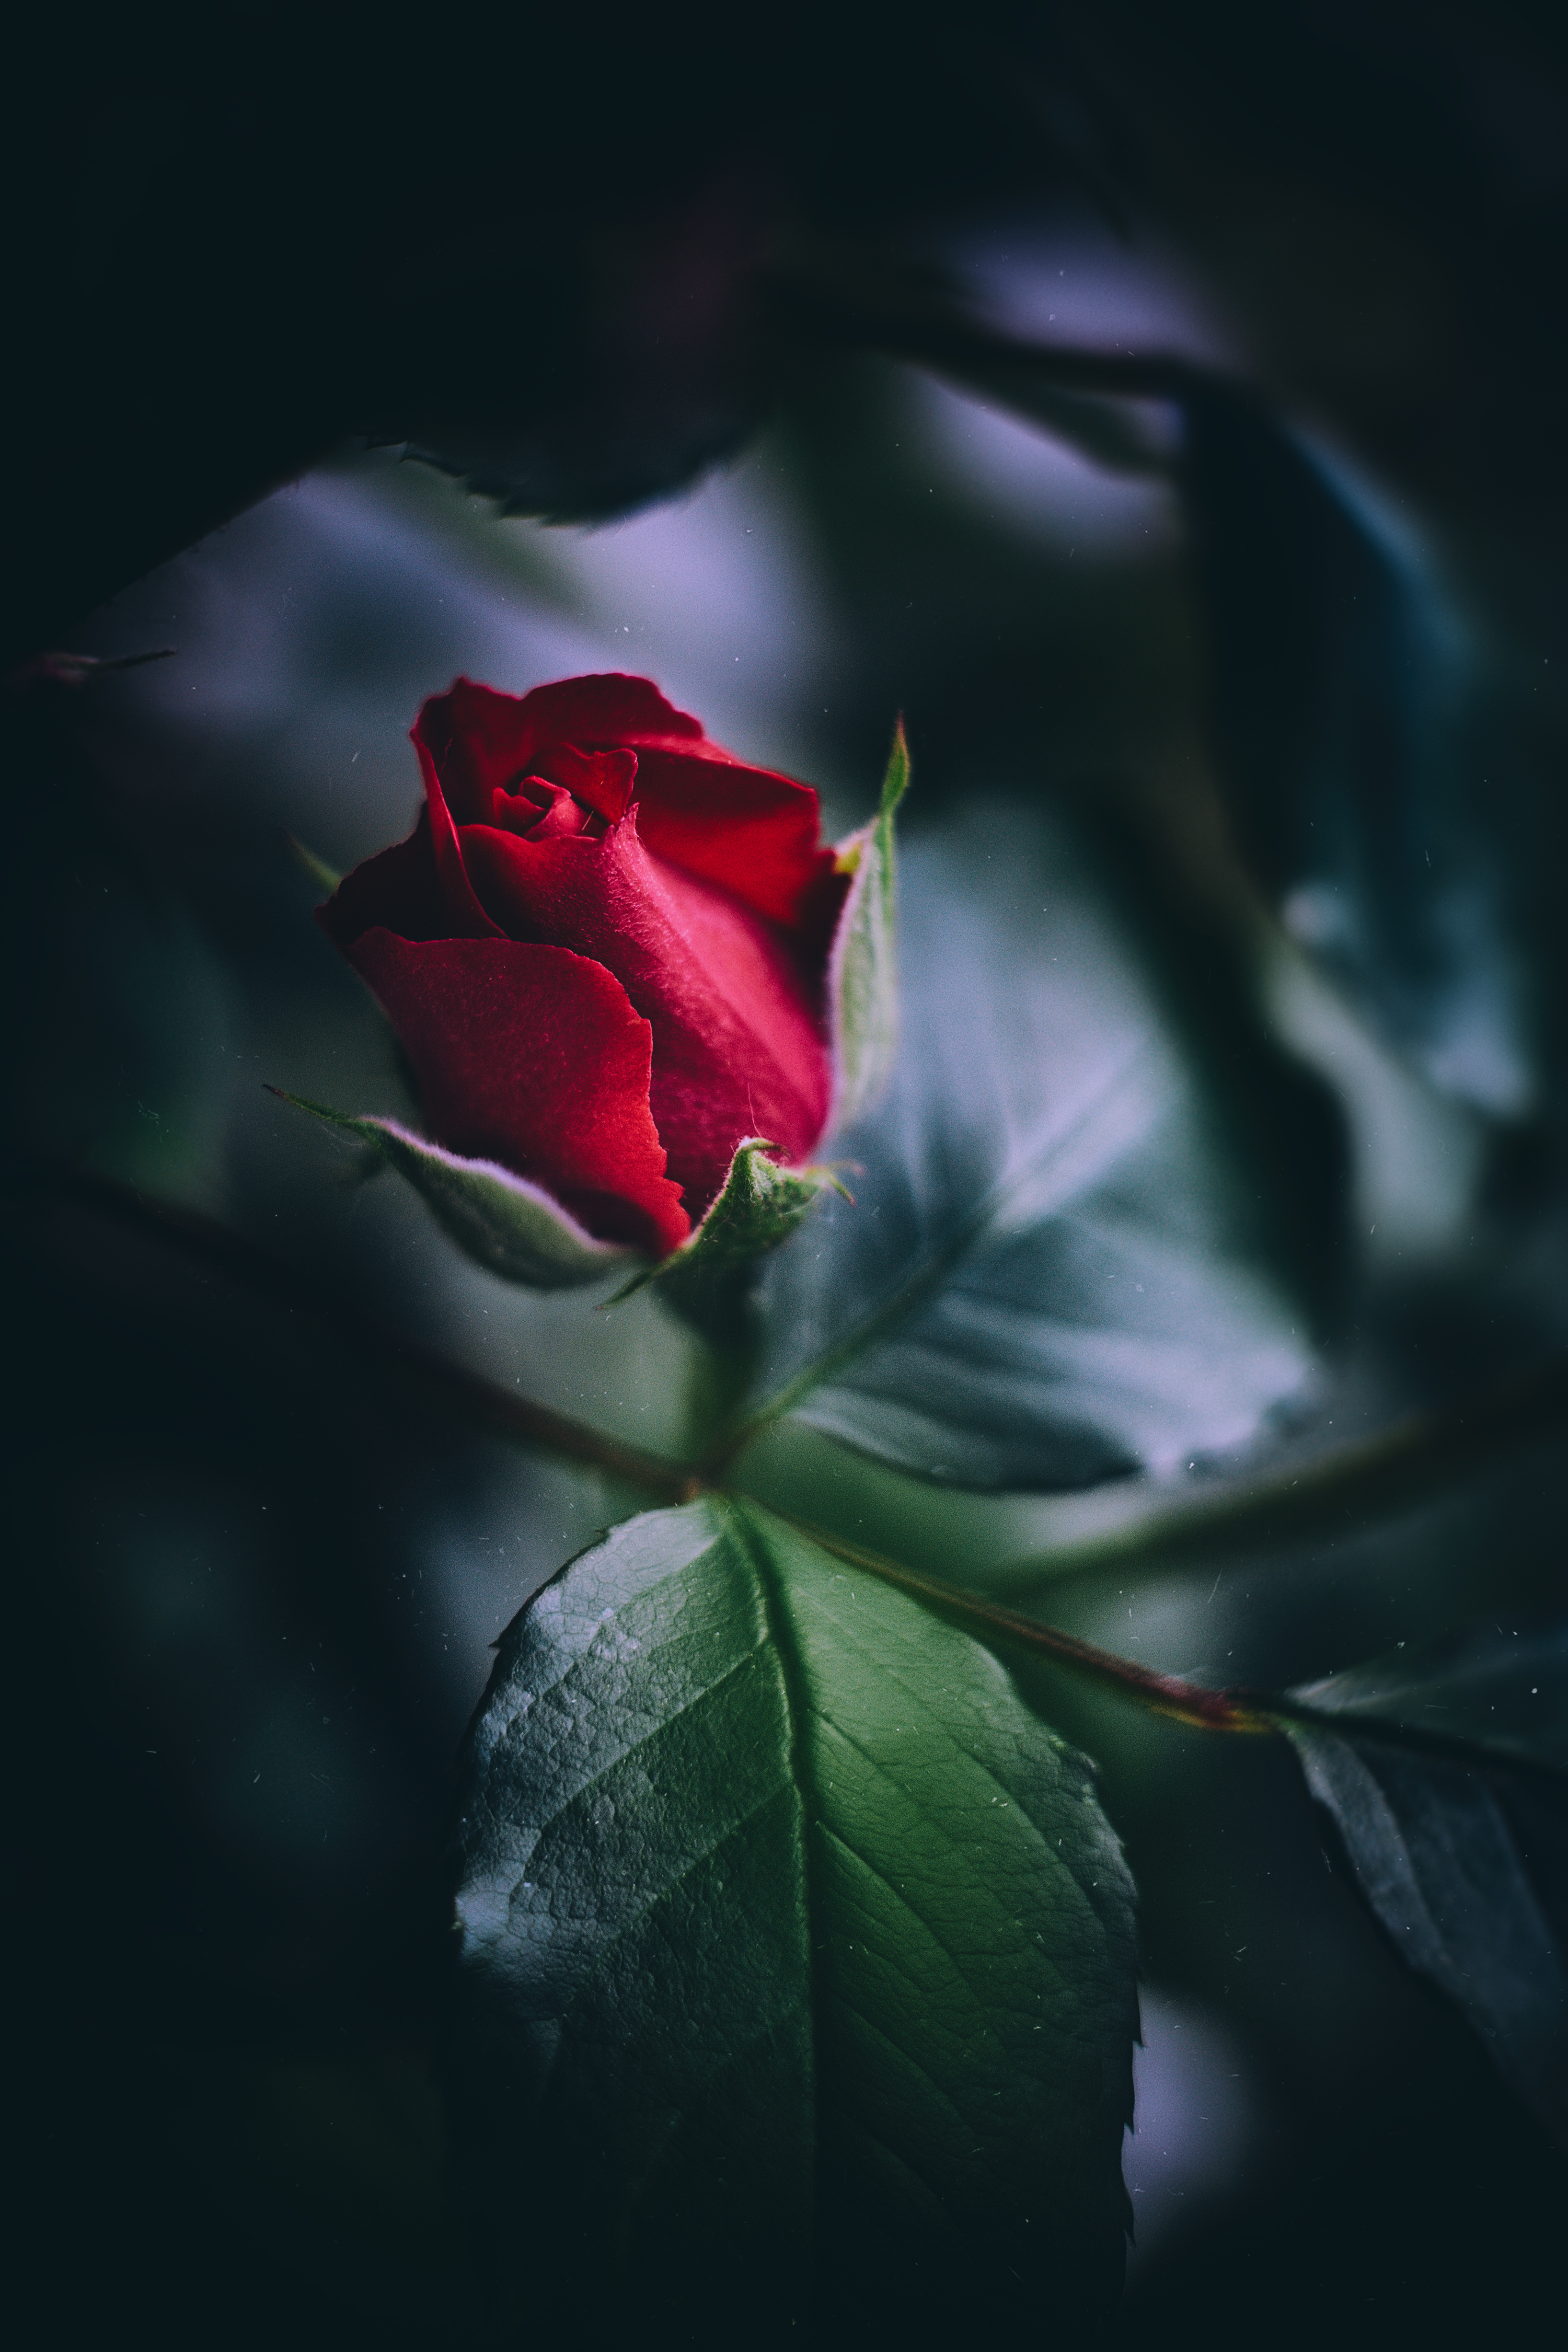 Desktop Backgrounds Rose Flower 